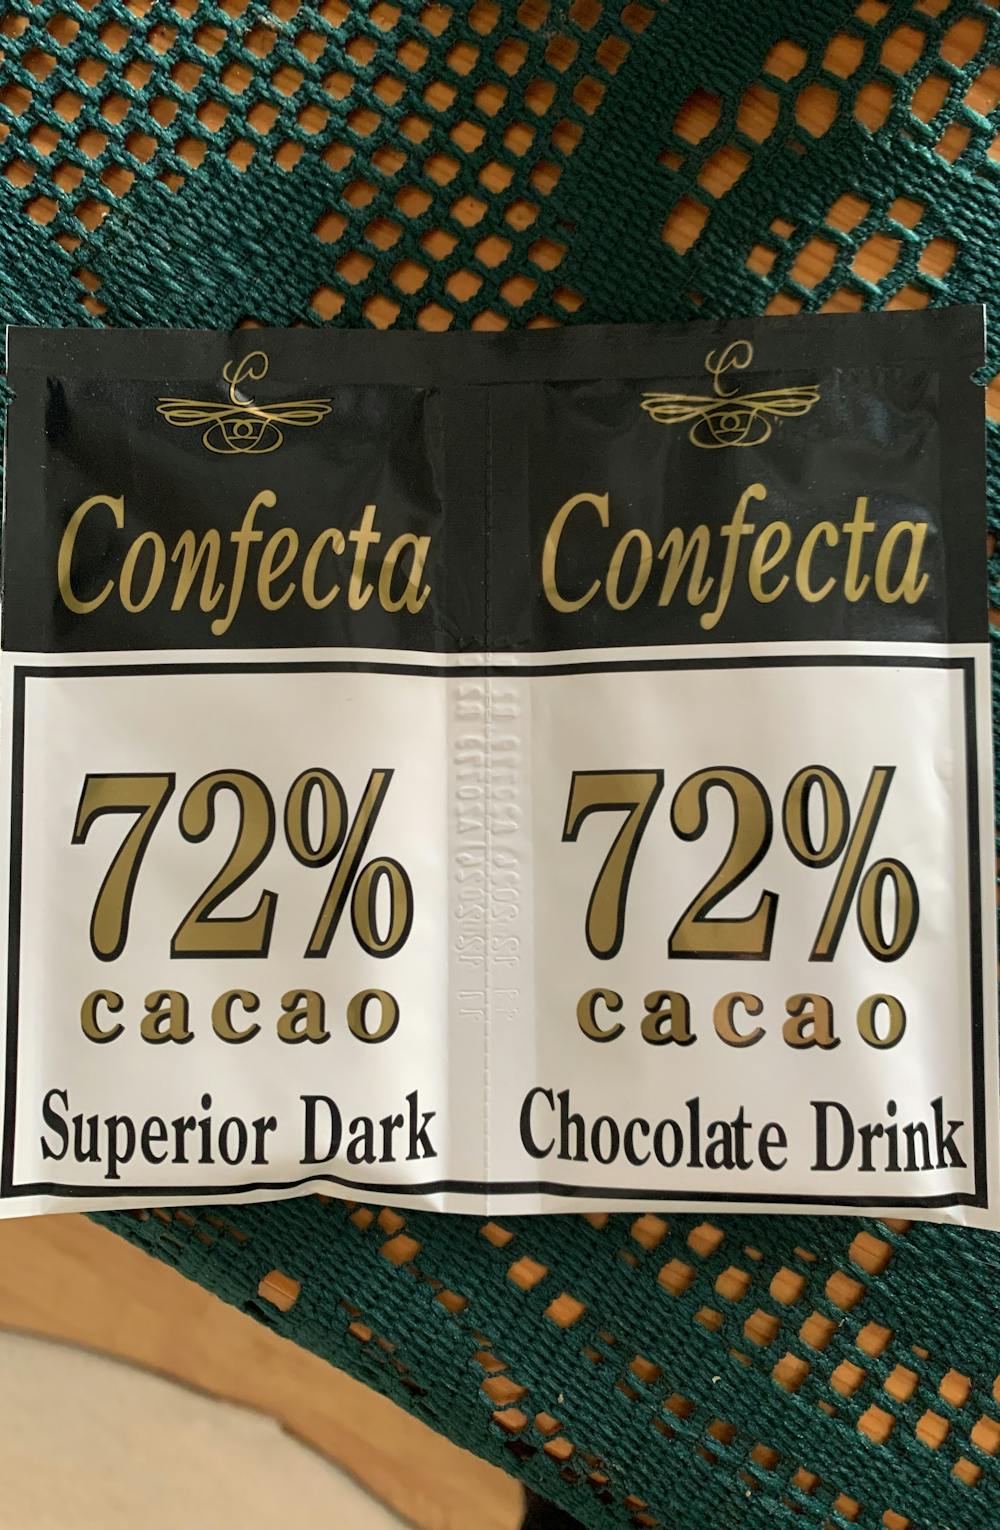 72% cacao superior dark, Confecta